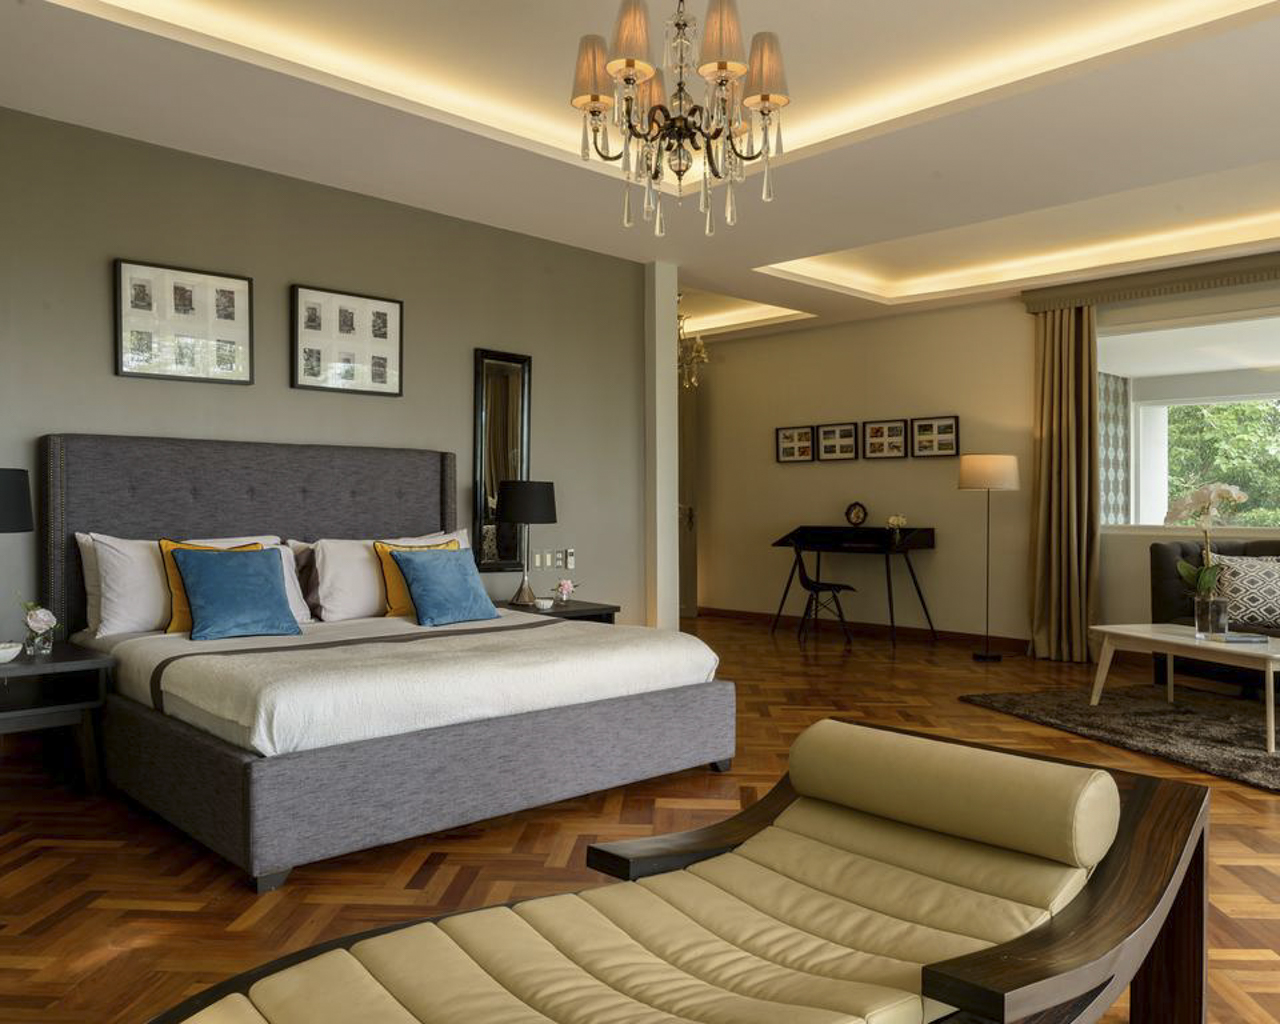 SRBML4 Luxury 5 Bedroom House for Sale in Maria Luisa Park Cebu Grand Realty-17